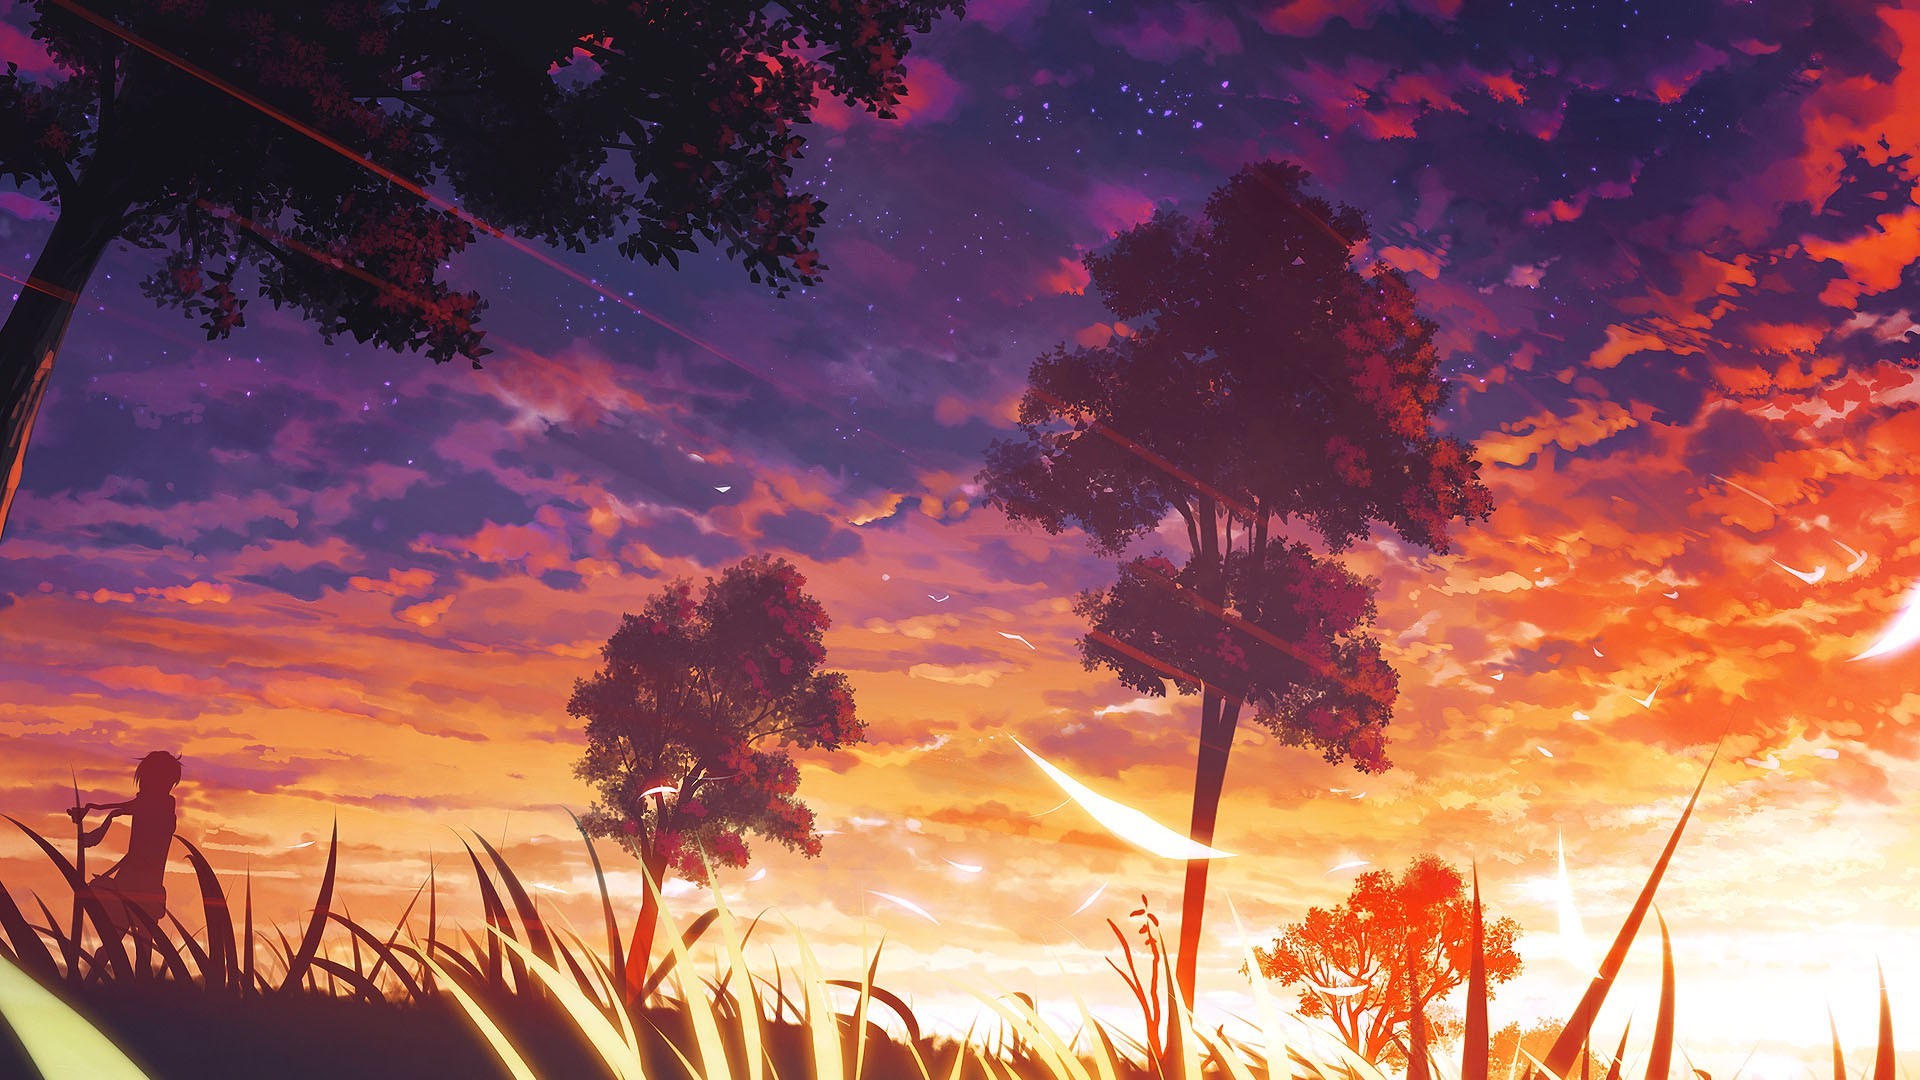 Rừng anime (Anime forest wallpapers): Rừng anime đầy sắc màu và huyền bí sẽ đưa bạn vào thế giới tự nhiên đầy kỳ quan và lãng mạn. Bạn sẽ được trải nghiệm những khoảnh khắc cực kỳ thú vị khi nhìn thấy những loài thiên nhiên và những thế giới ẩn giấu trong rừng anime.